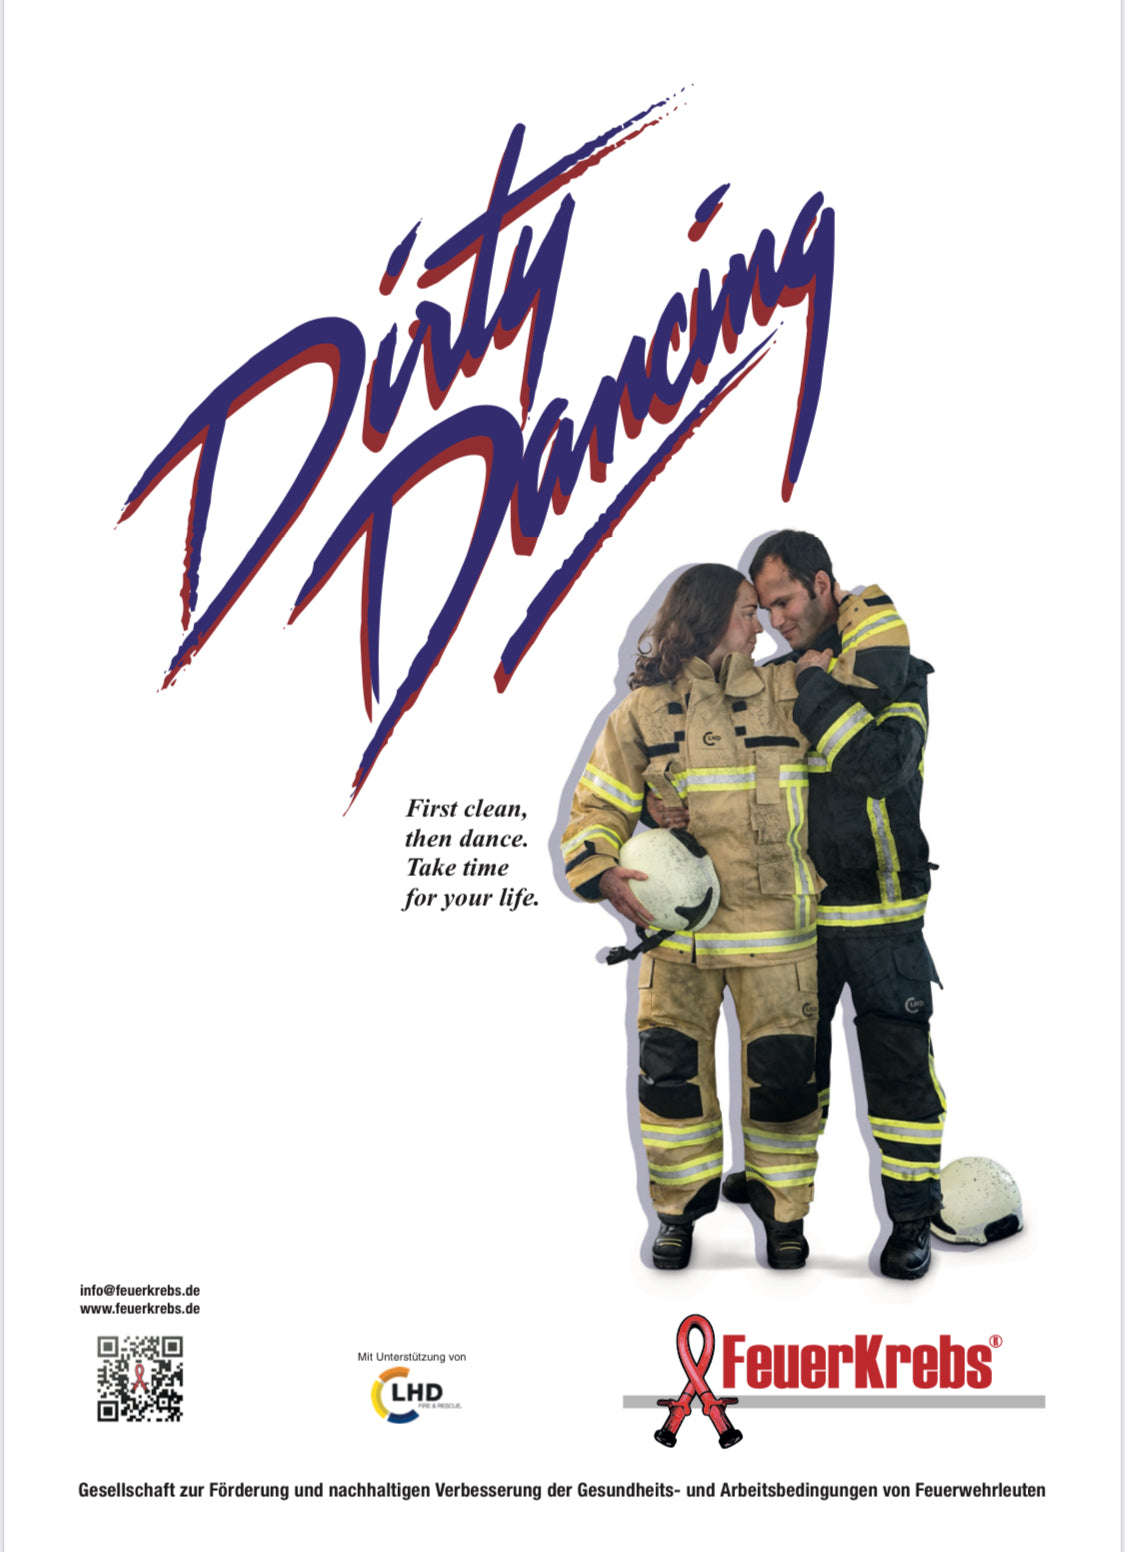 FeuerKrebs x "Dirty Dancing" - MovieStar Plakat (Limitiert)